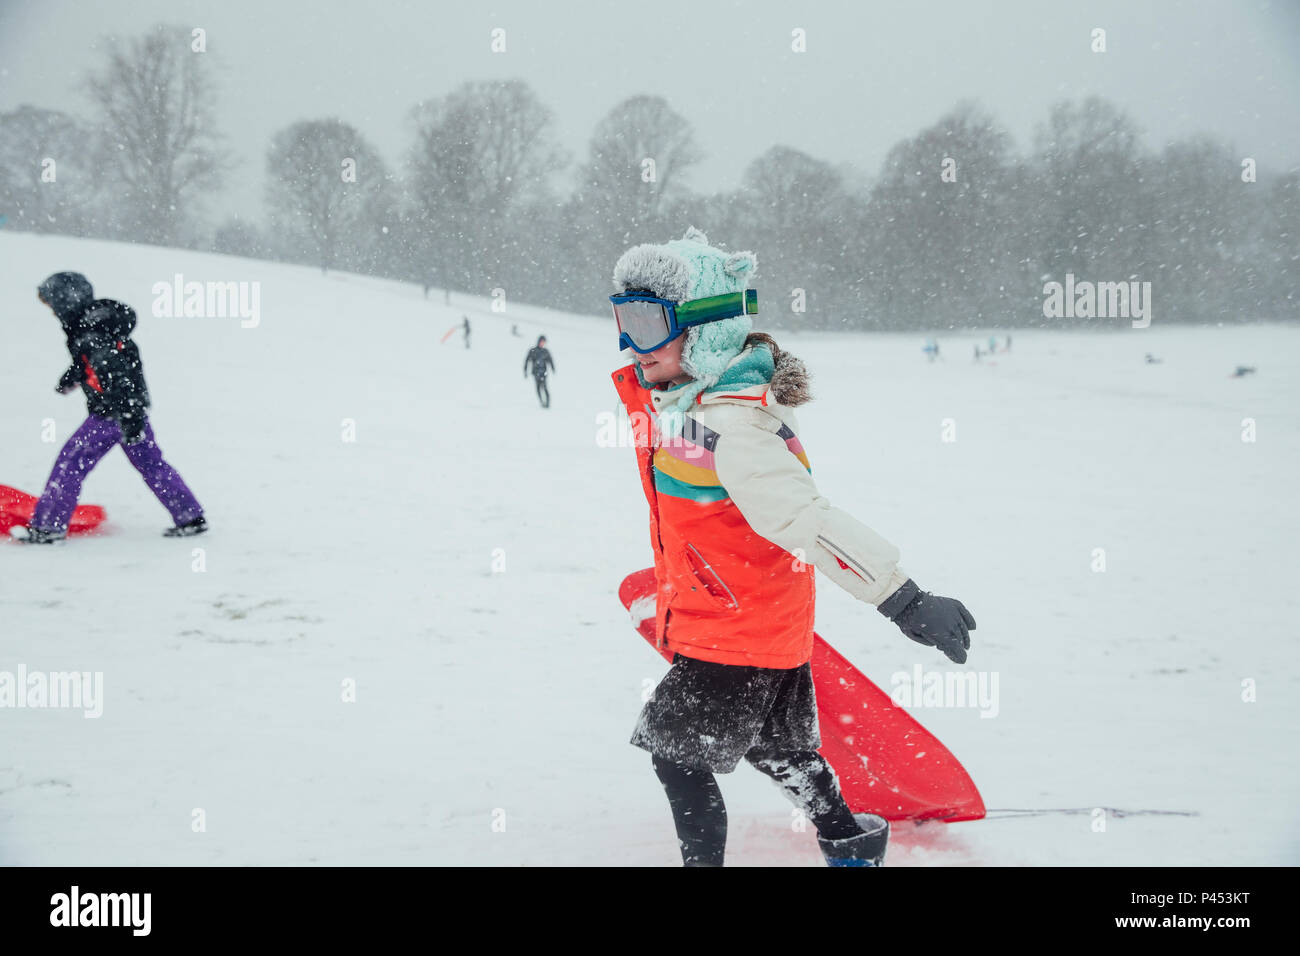 Bambina sta portando il suo sled indietro fino alla cima di una collina con i suoi amici. Nevica e indossa occhiali da sci. Foto Stock